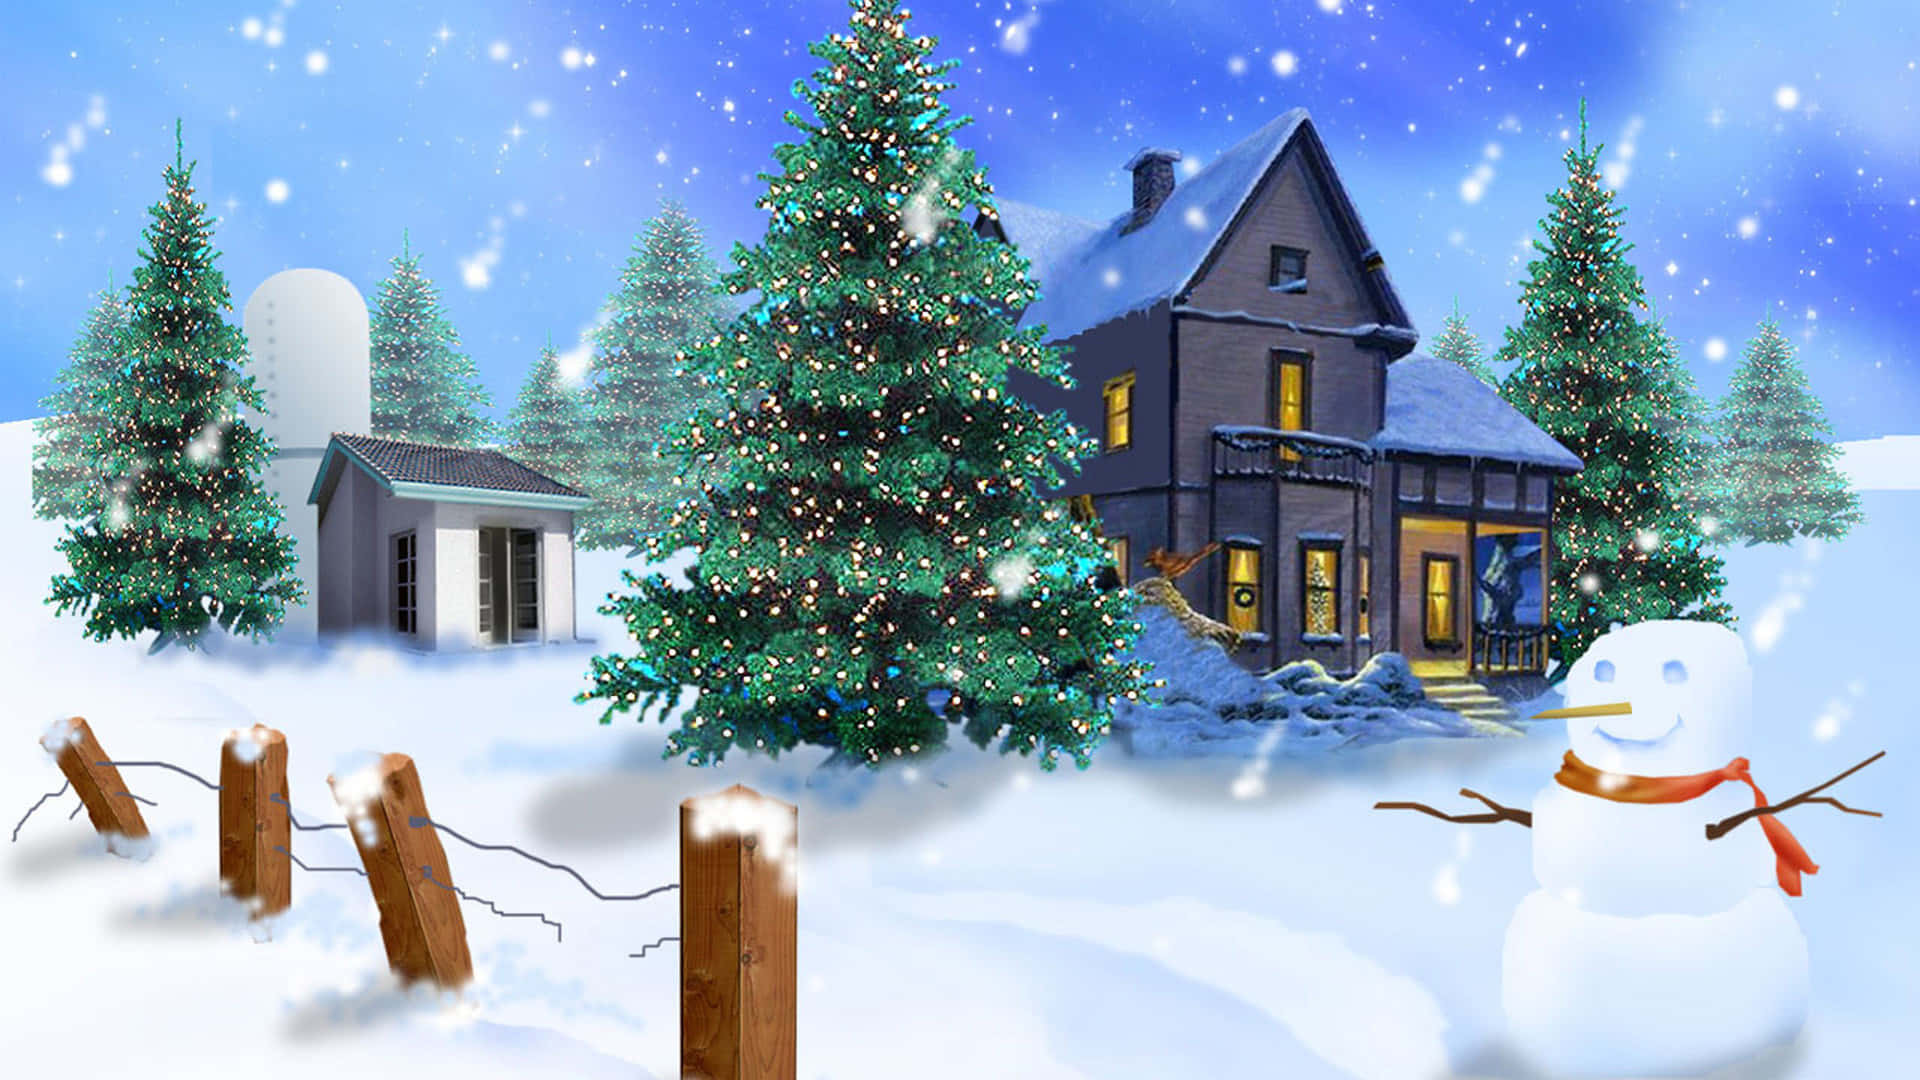 Festive 3D Christmas Scene Wallpaper